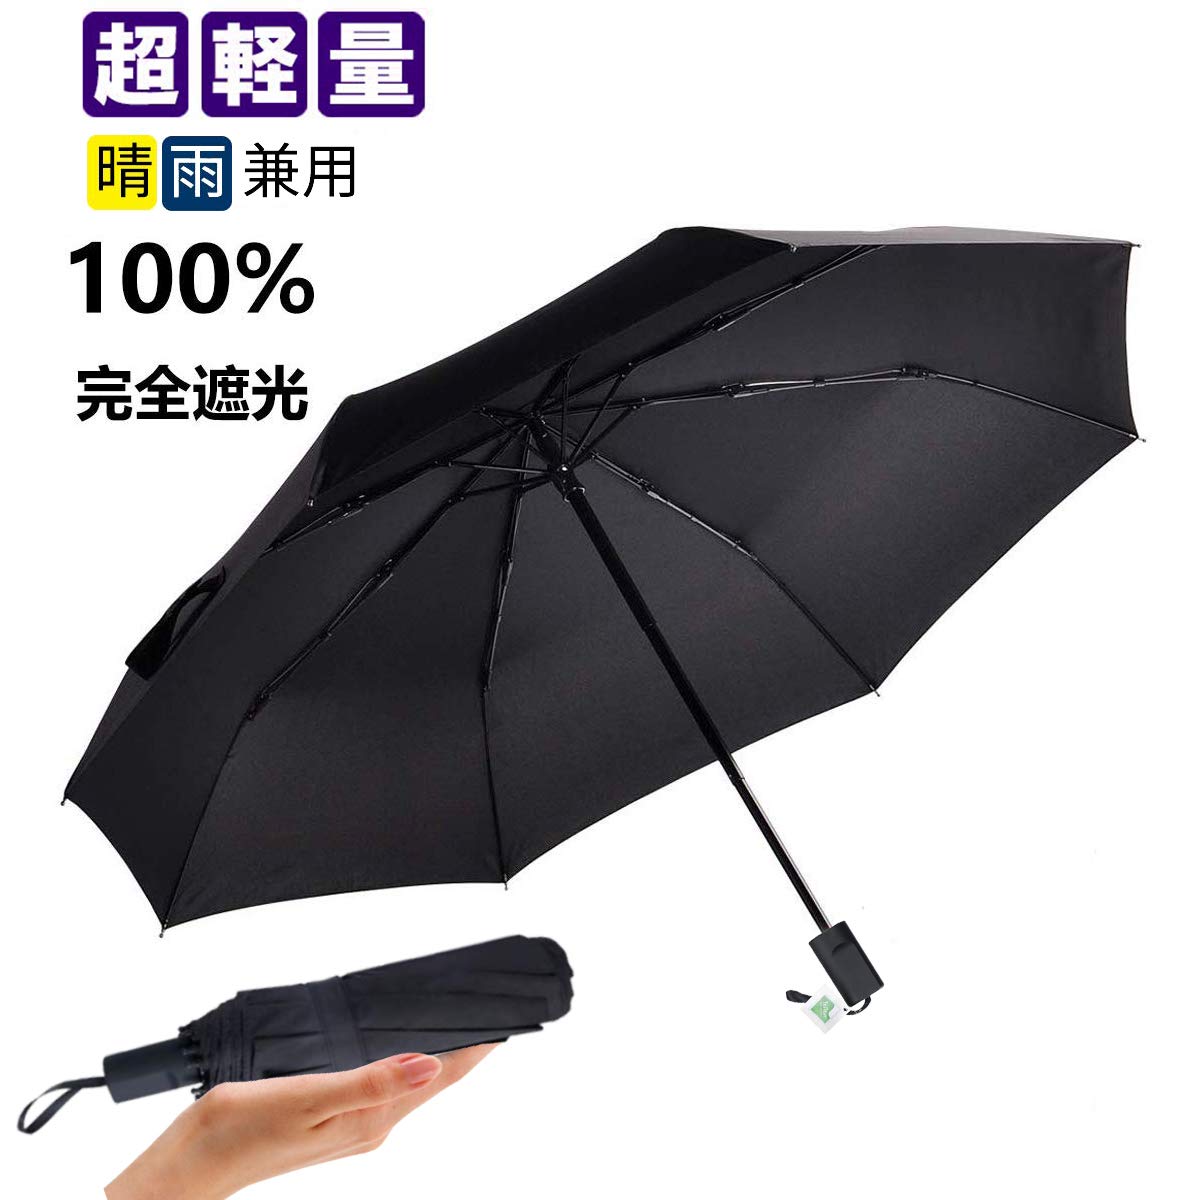 超軽量,折りたたみ傘